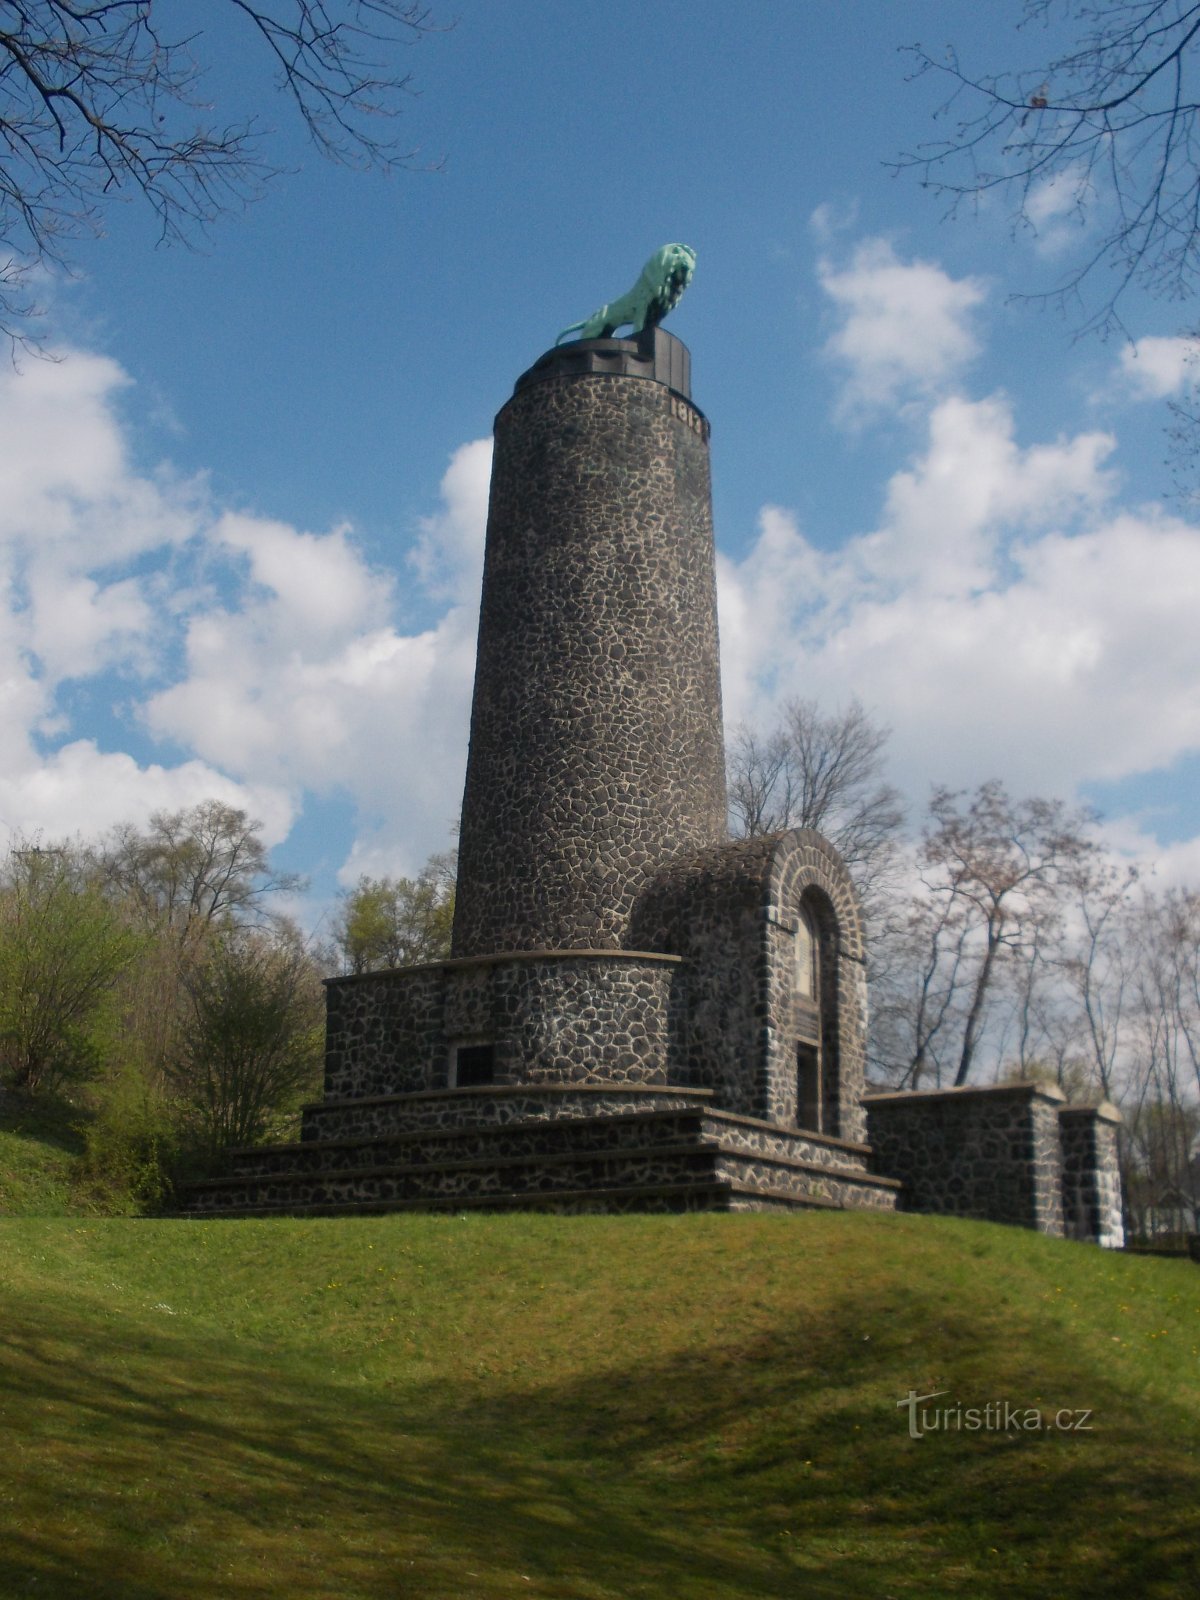 jubileum monument